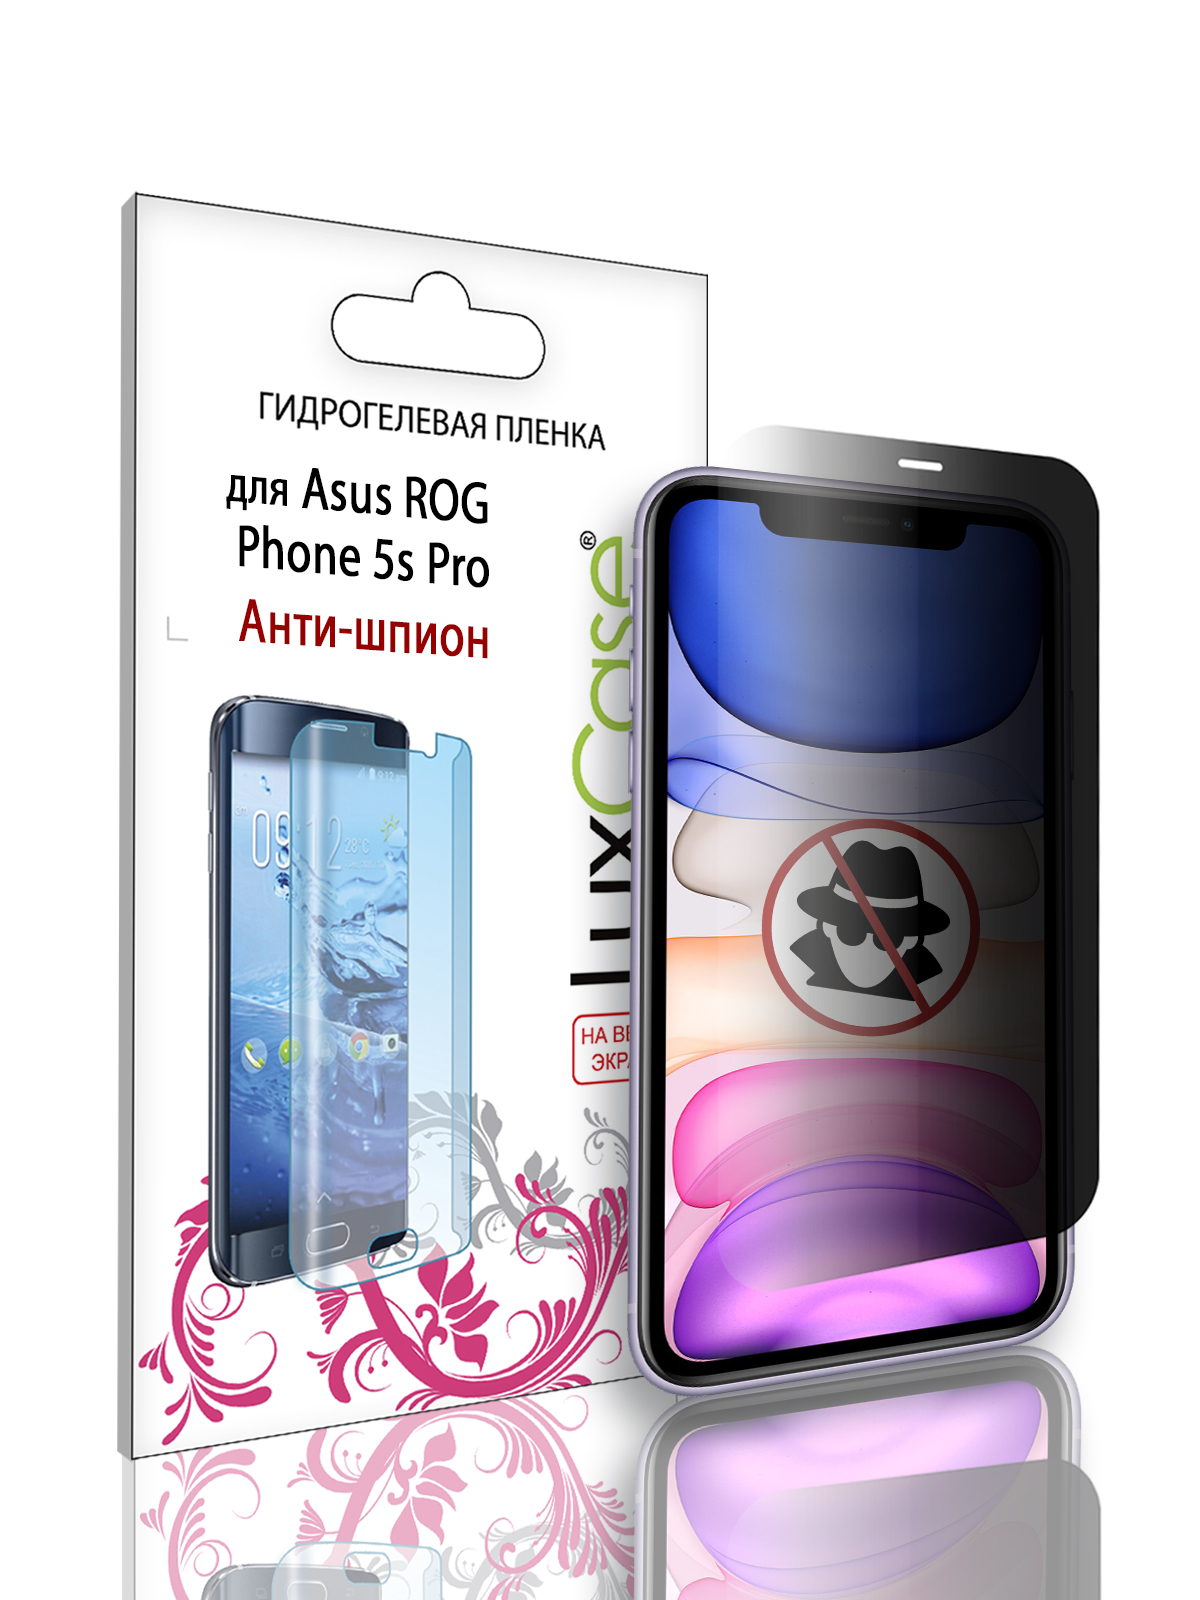 Гидрогелевая пленка LuxCase для Asus ROG Phone 5s Pro, Антишпион, 0,14 мм, Front гидрогелевая защитная пленка антишпион anty spy анти шпион для motorola moto fusion матовая